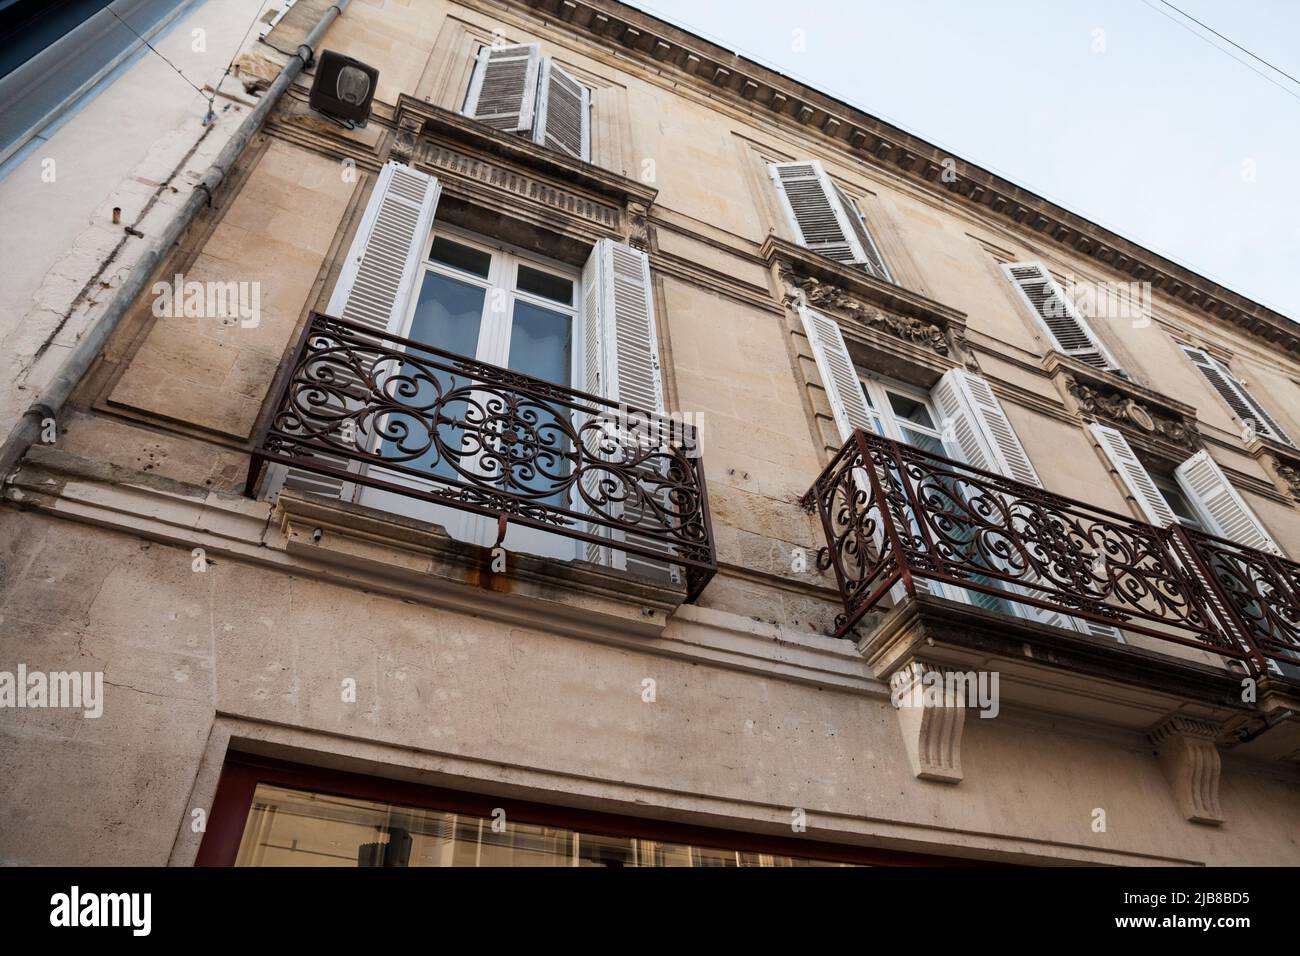 Fassade eines typischen alten französischen Wohnhauses in Bordeaux, Frankreich, aus einem Freestone, das Wohnungen beherbergt, mit einer südwestlichen französischen Architektur und Stockfoto